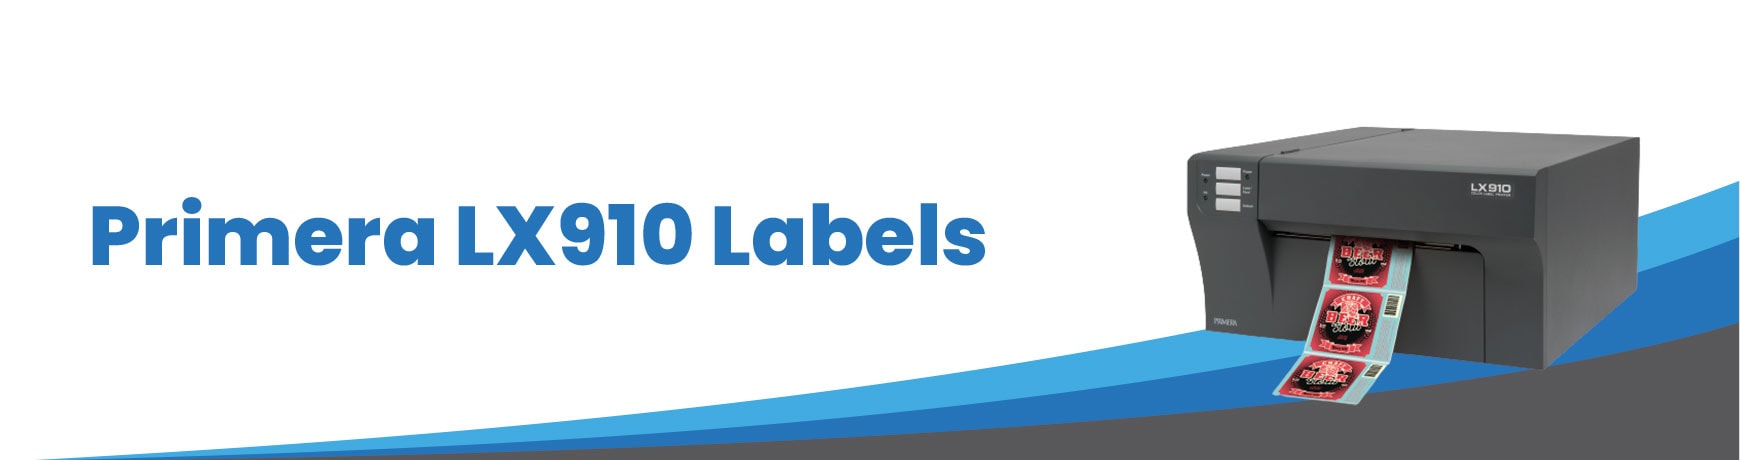 Primera LX910 Labels